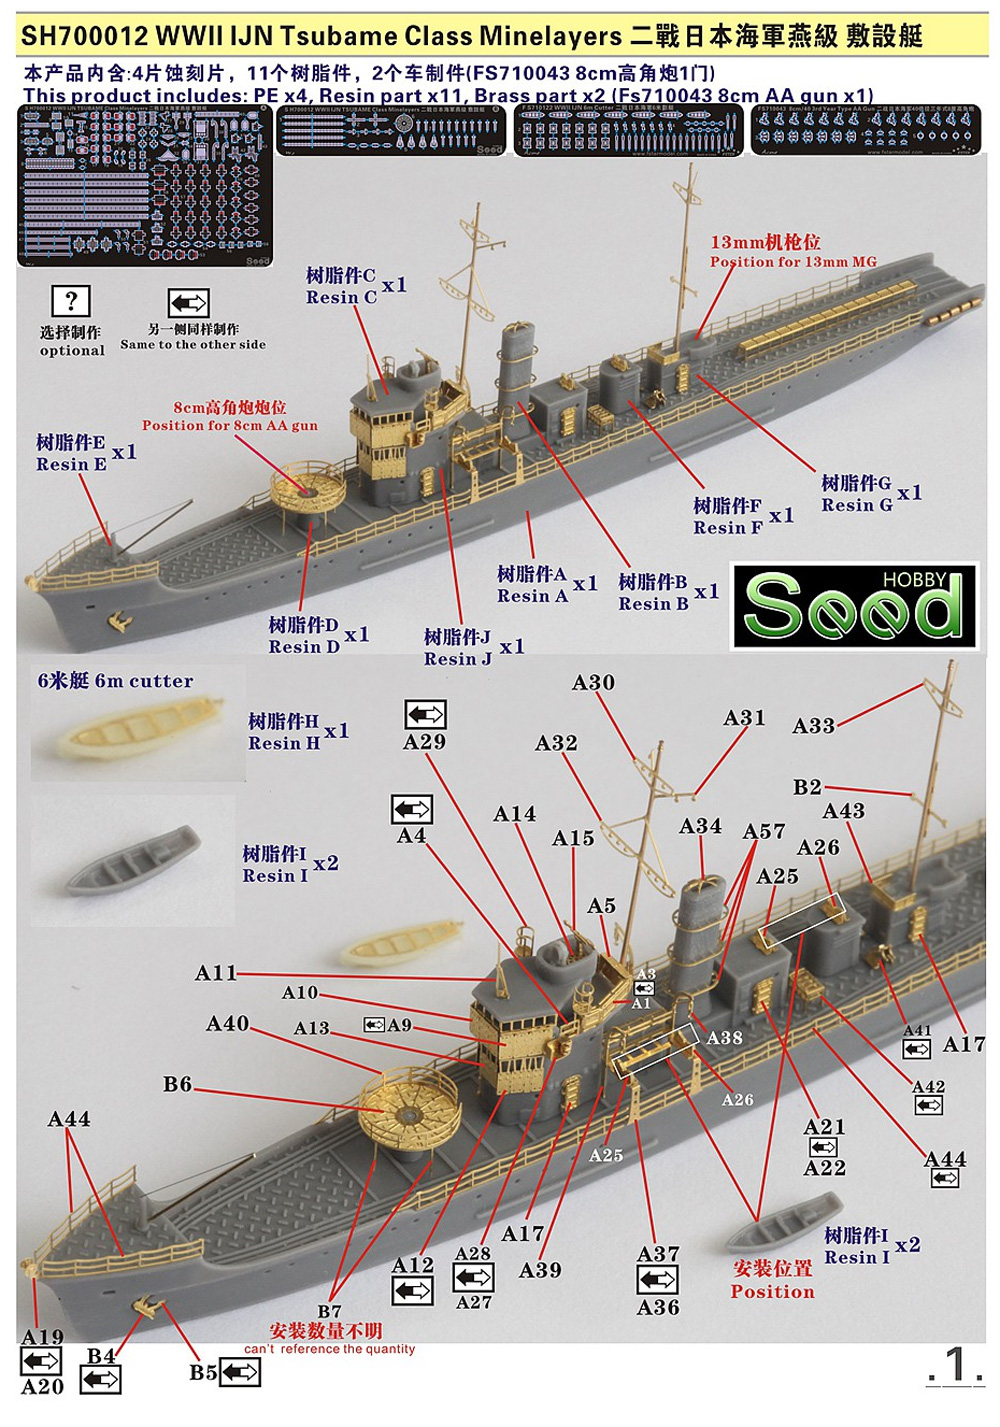 日本海軍 燕型 敷設艇 レジン (Seed HOBBY 1/700 レジンキット No.SH700012) 商品画像_1